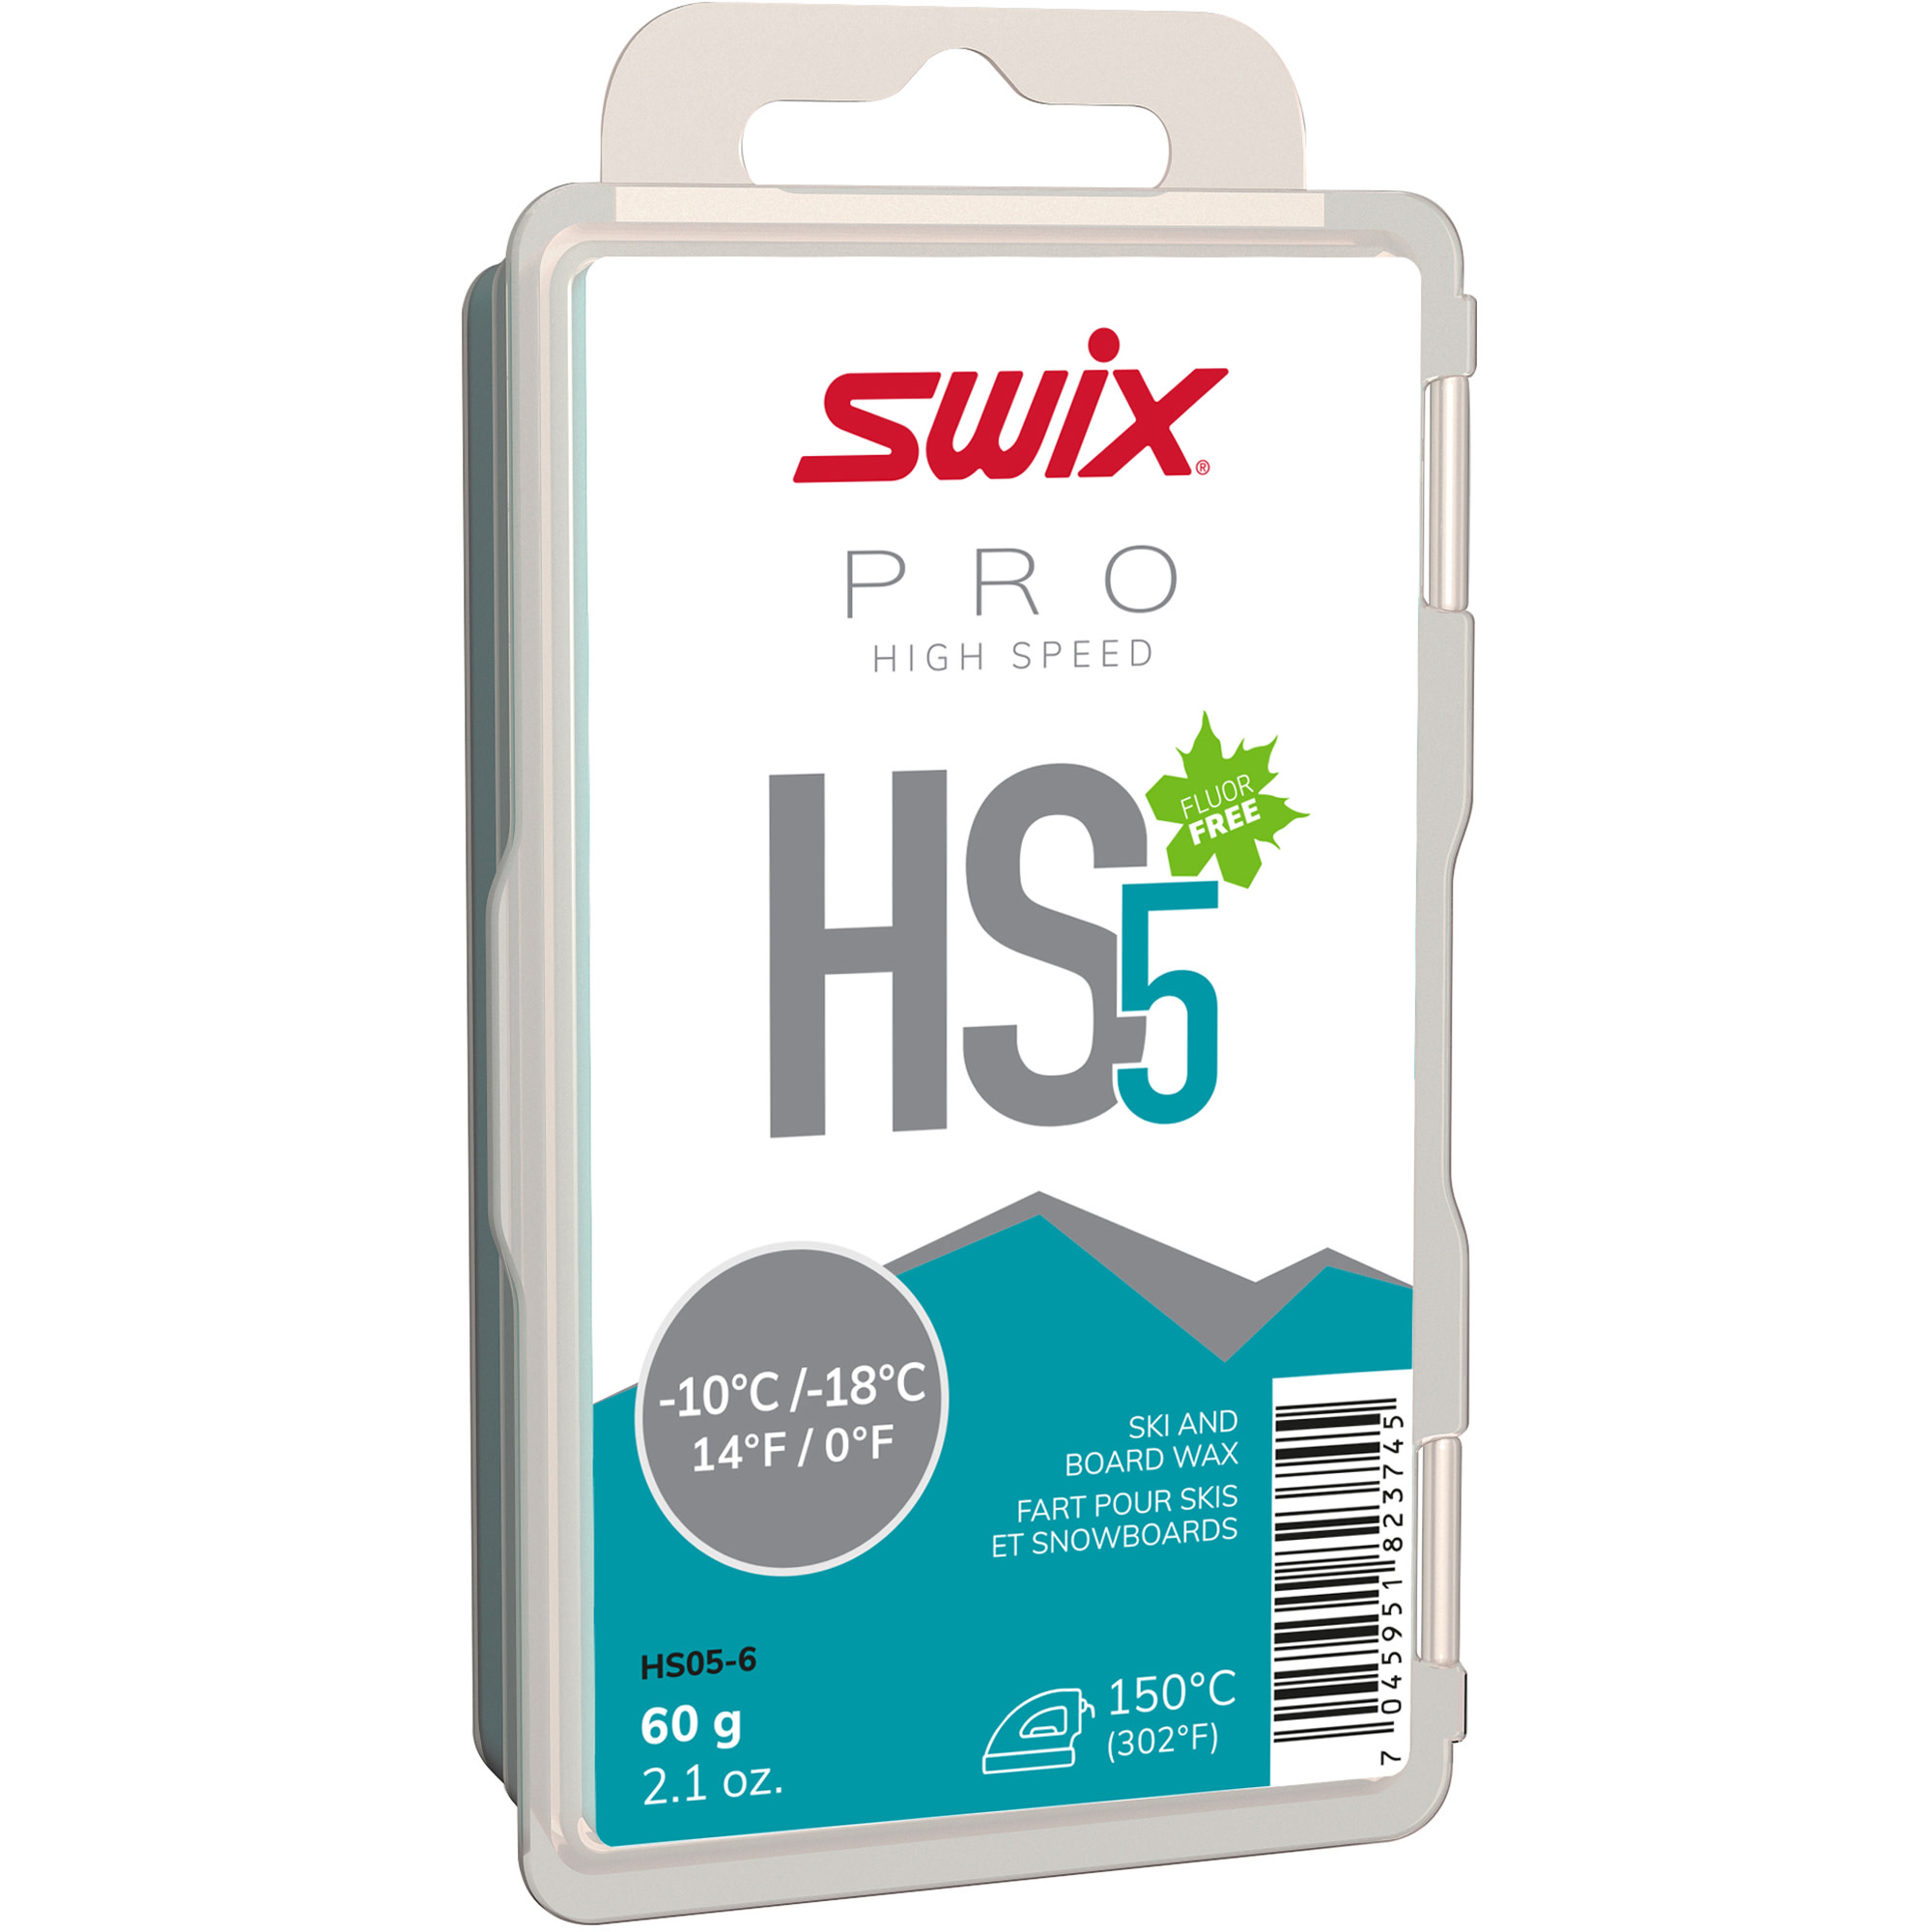 swix HS5 Turquoise -10°c/-18°c